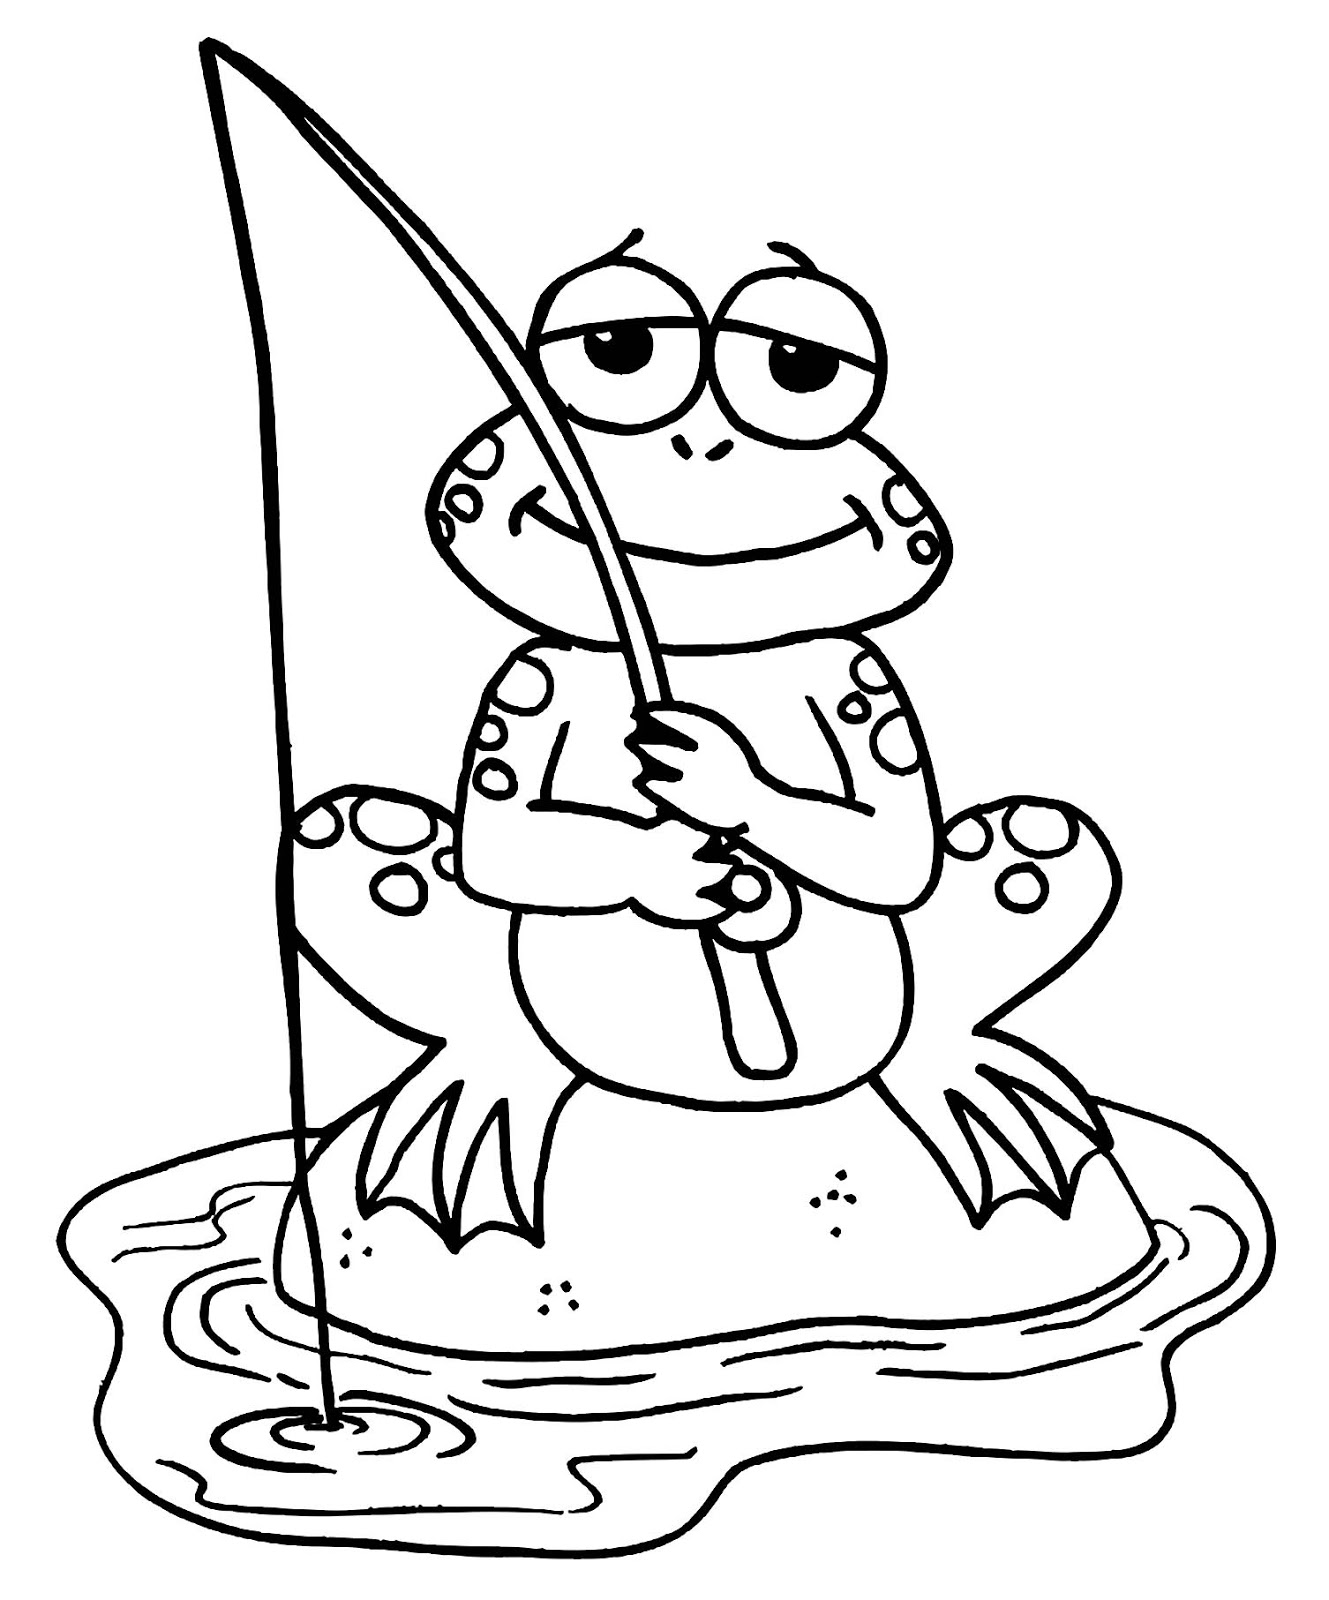 Tranh tô màu con ếch ngồi câu cá